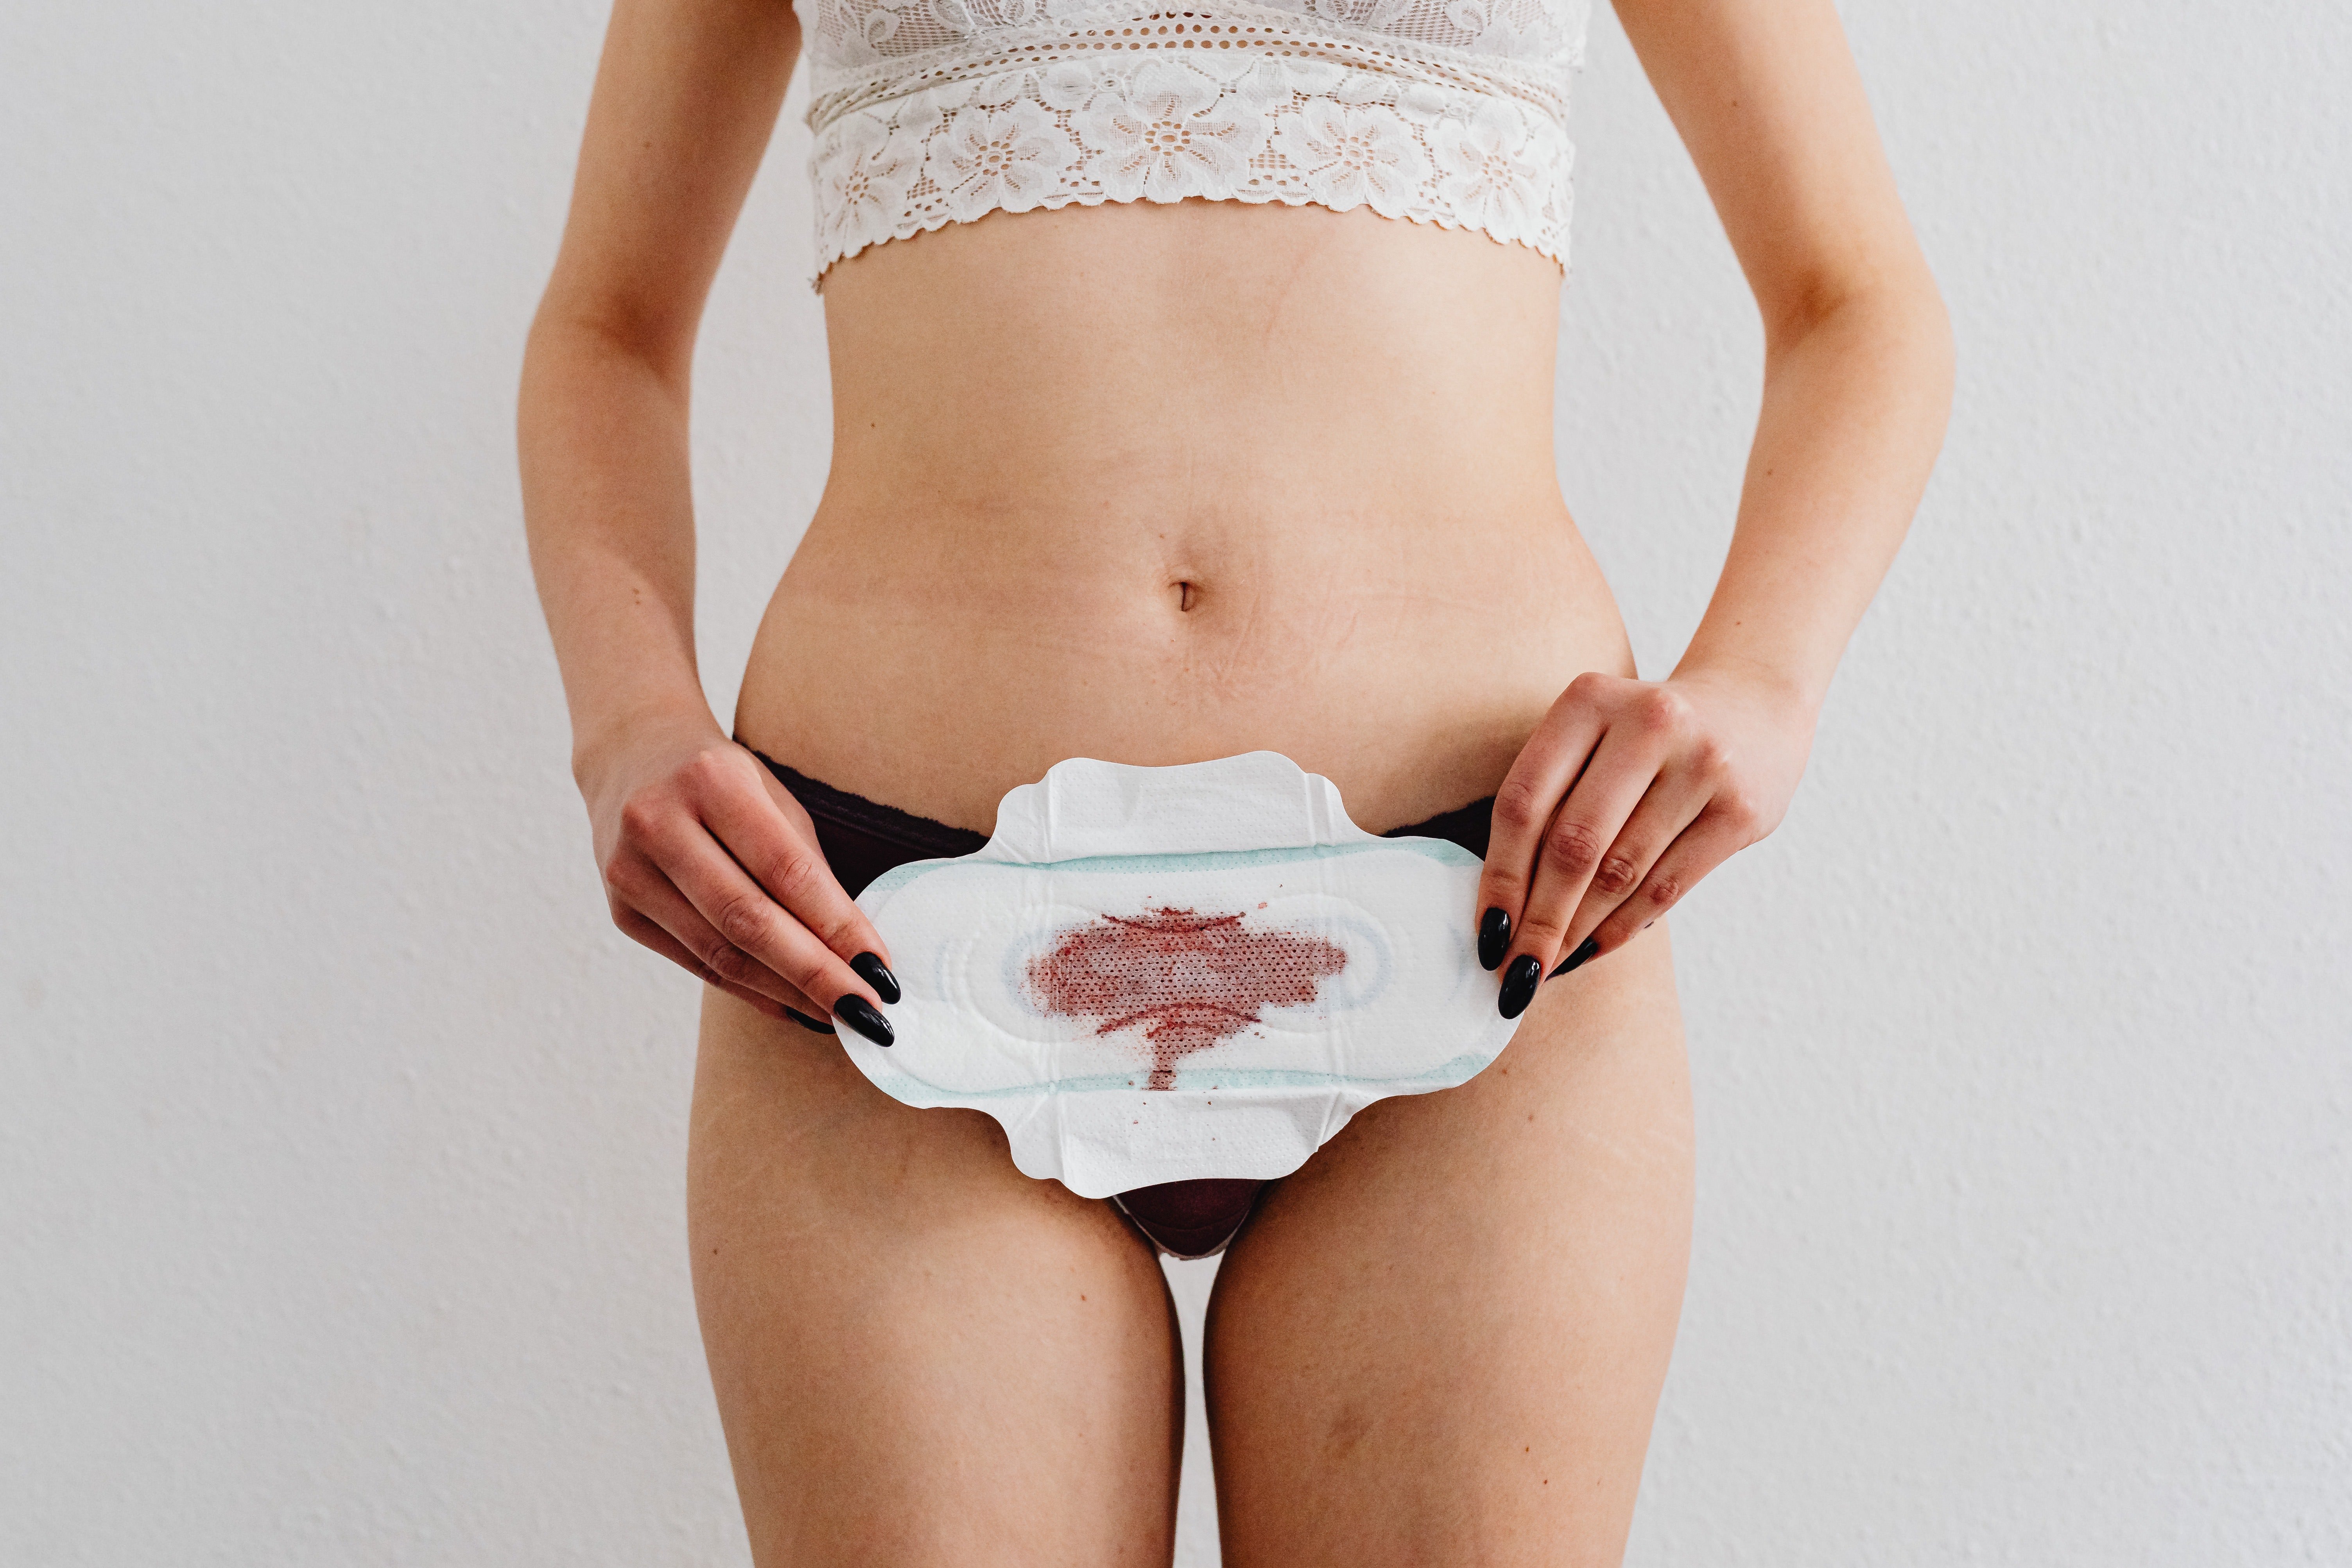 "La regla no es sucia ni asquerosa": la normalización de la menstruación en la pantalla